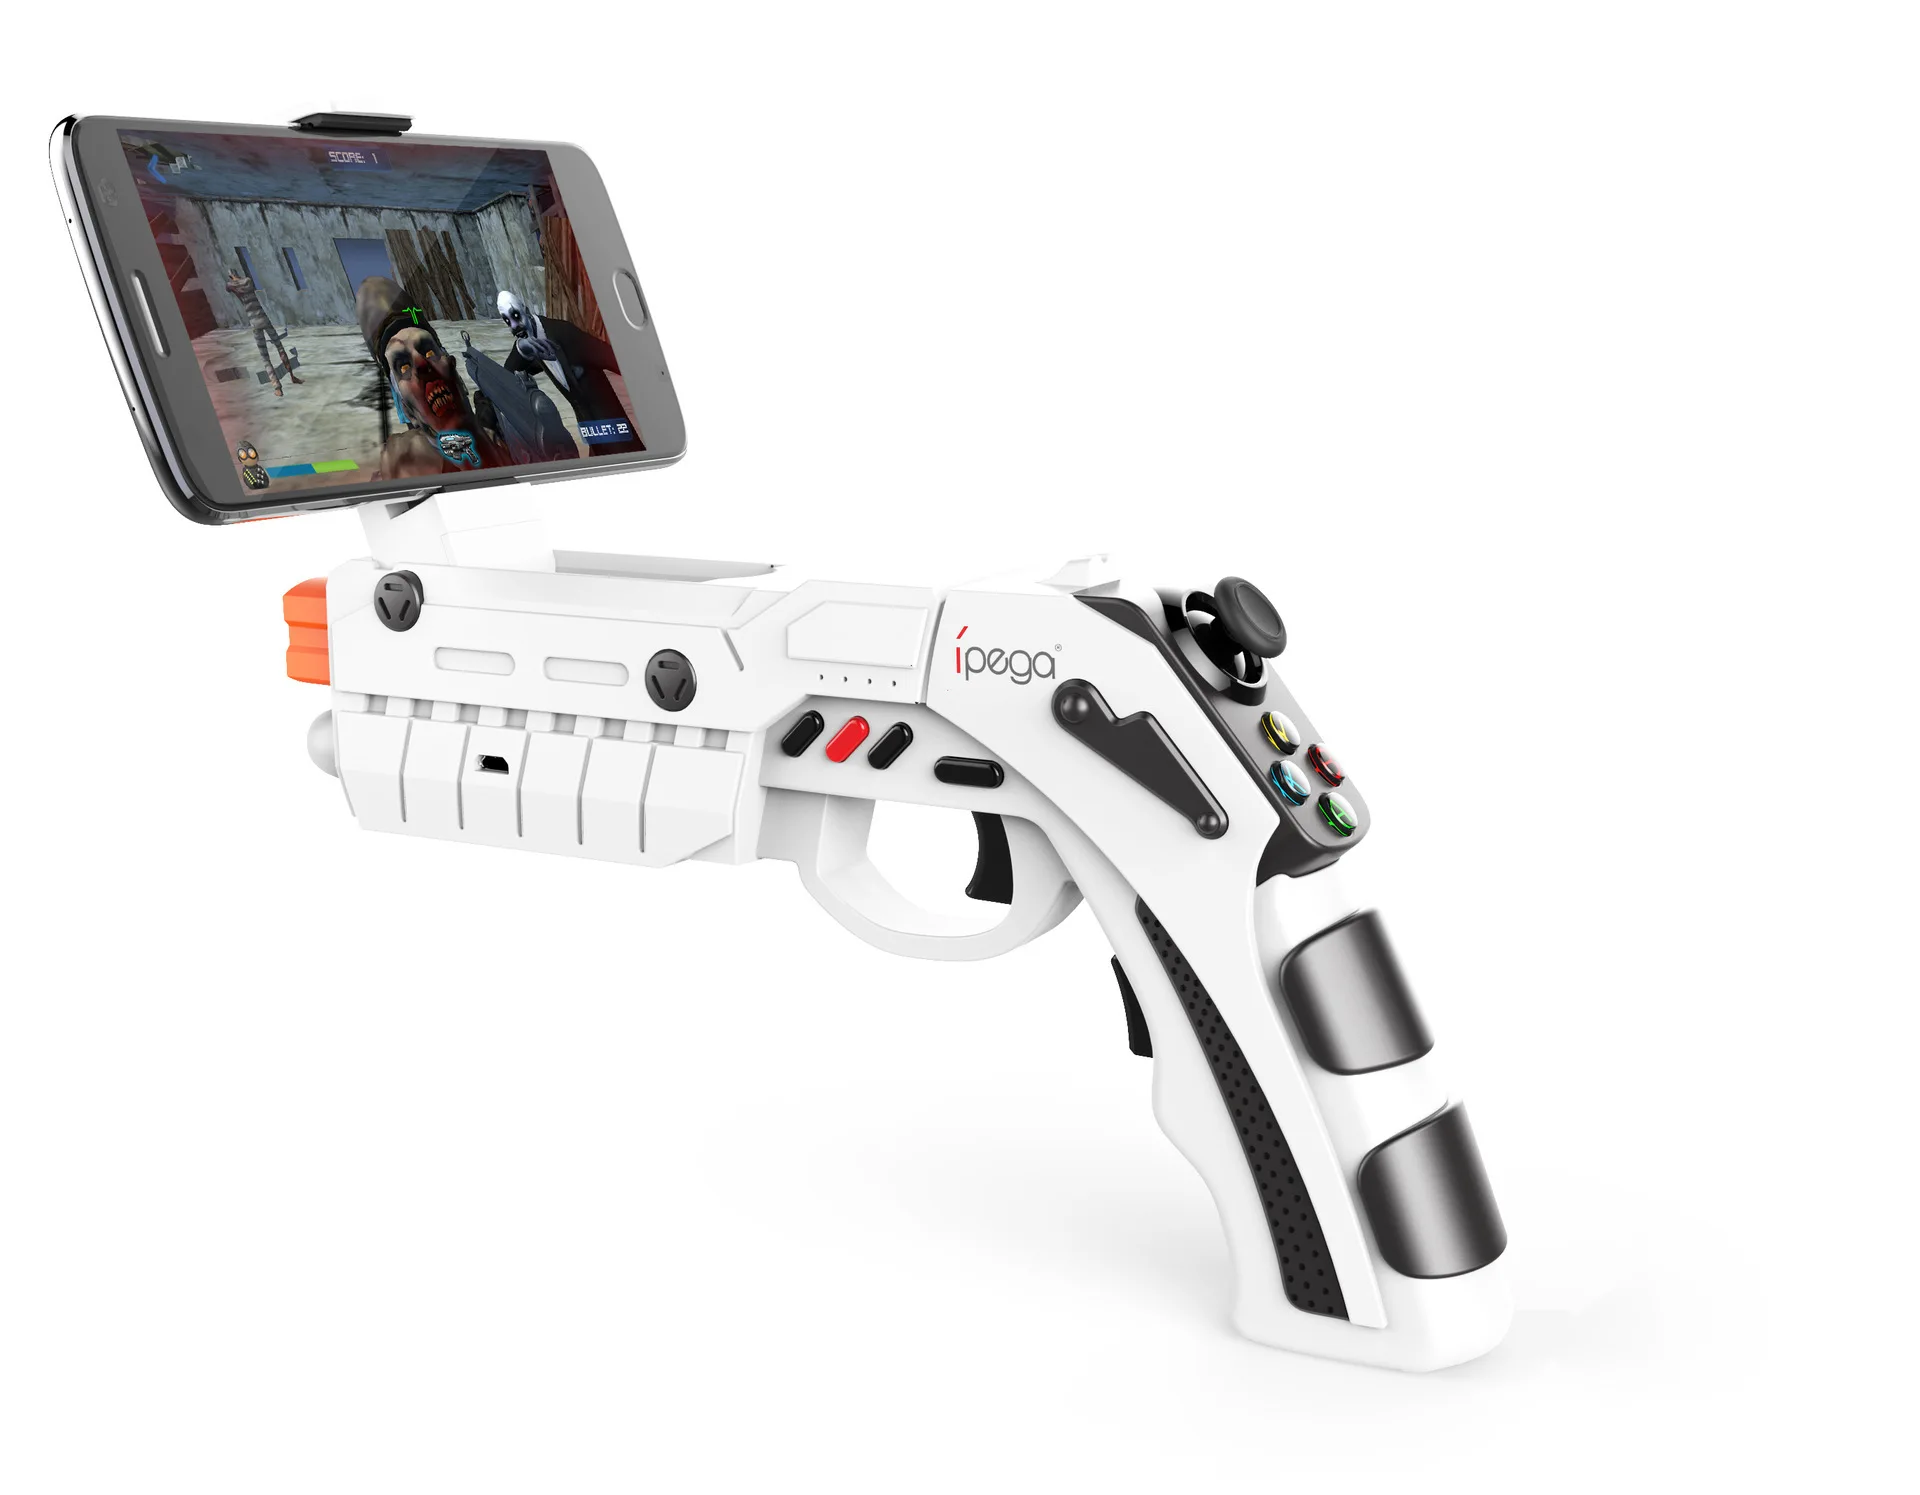 IPega PG 9082 Bluetooth геймпад стрельба пистолет джойстик для Android iOS Телефон ПК AR игровой контроллер динамический реалистичные